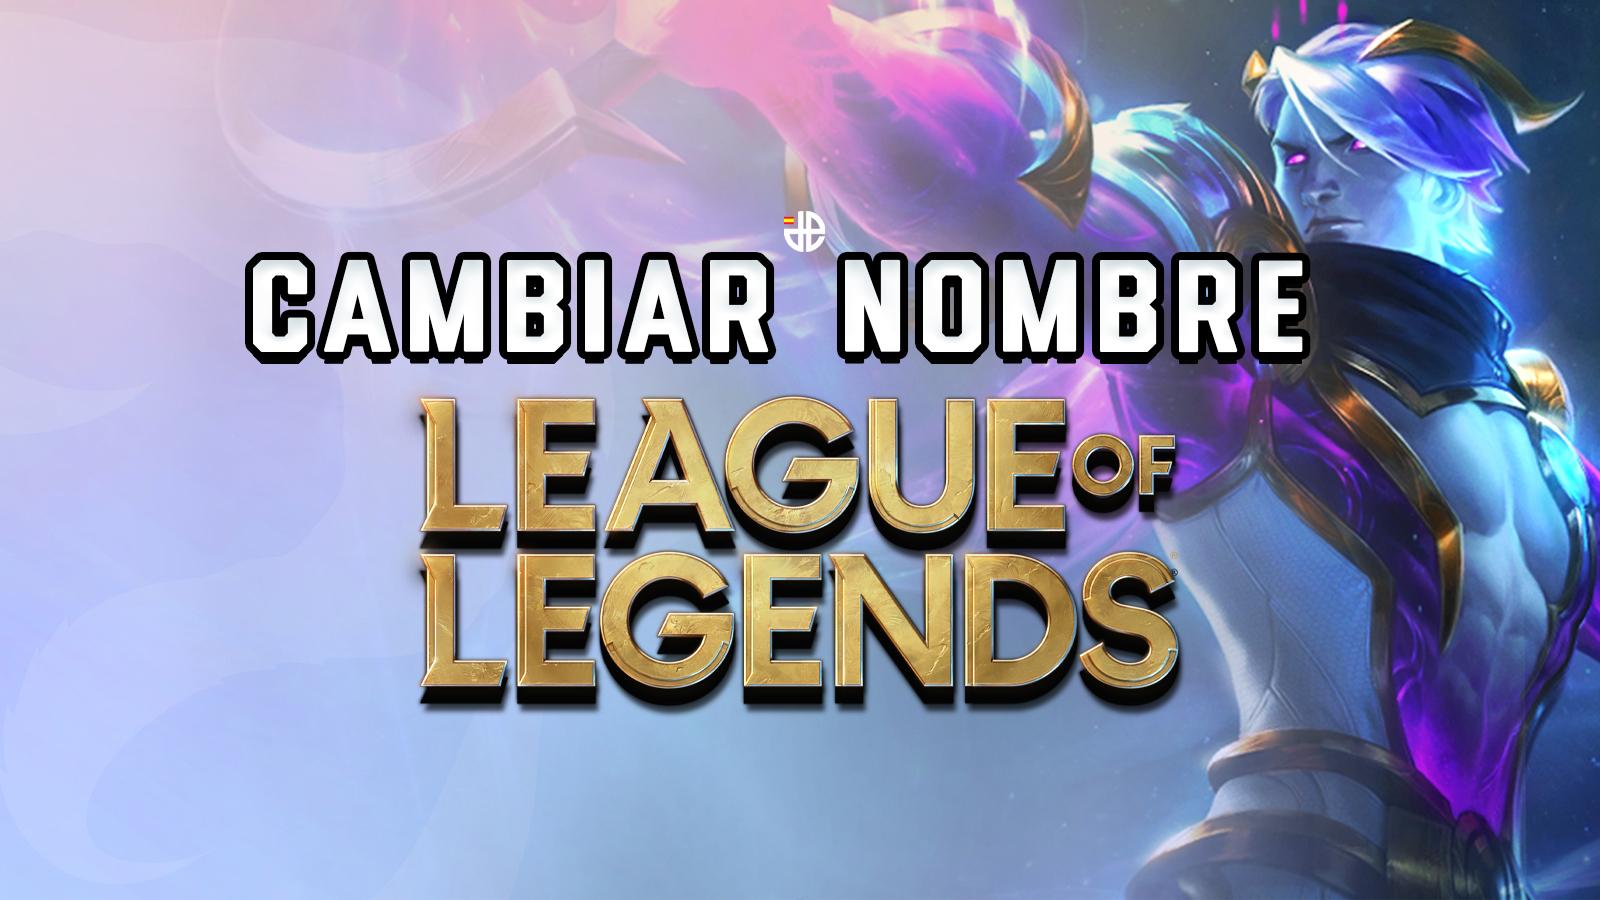 Cambiar nombre league of legends